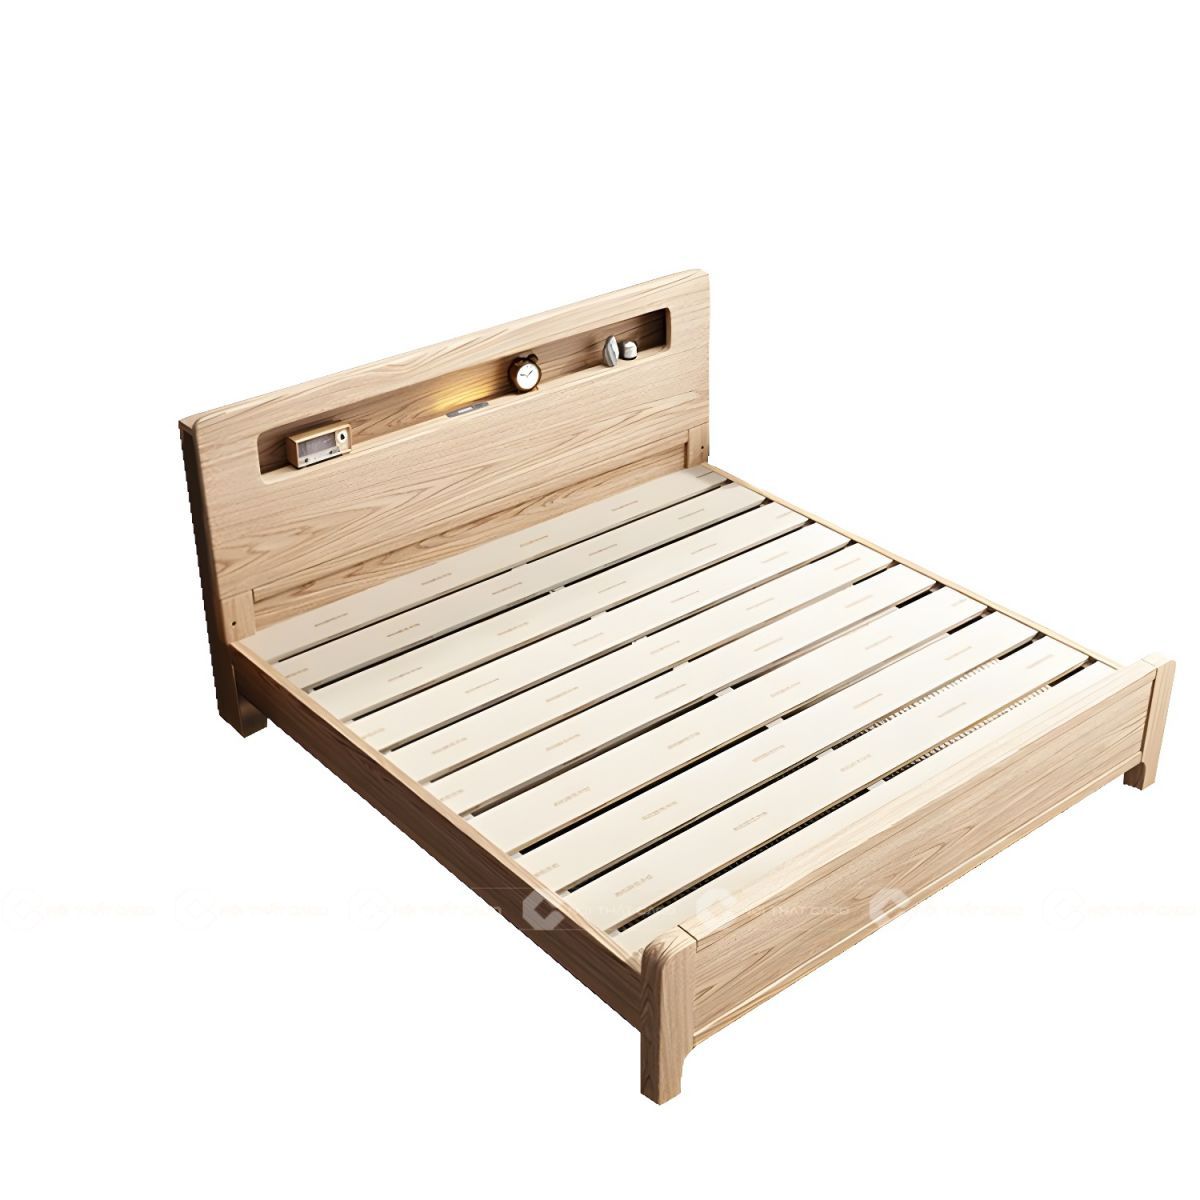 Giường ngủ gỗ tự nhiên có thiết kế thoáng khí, hiện đại